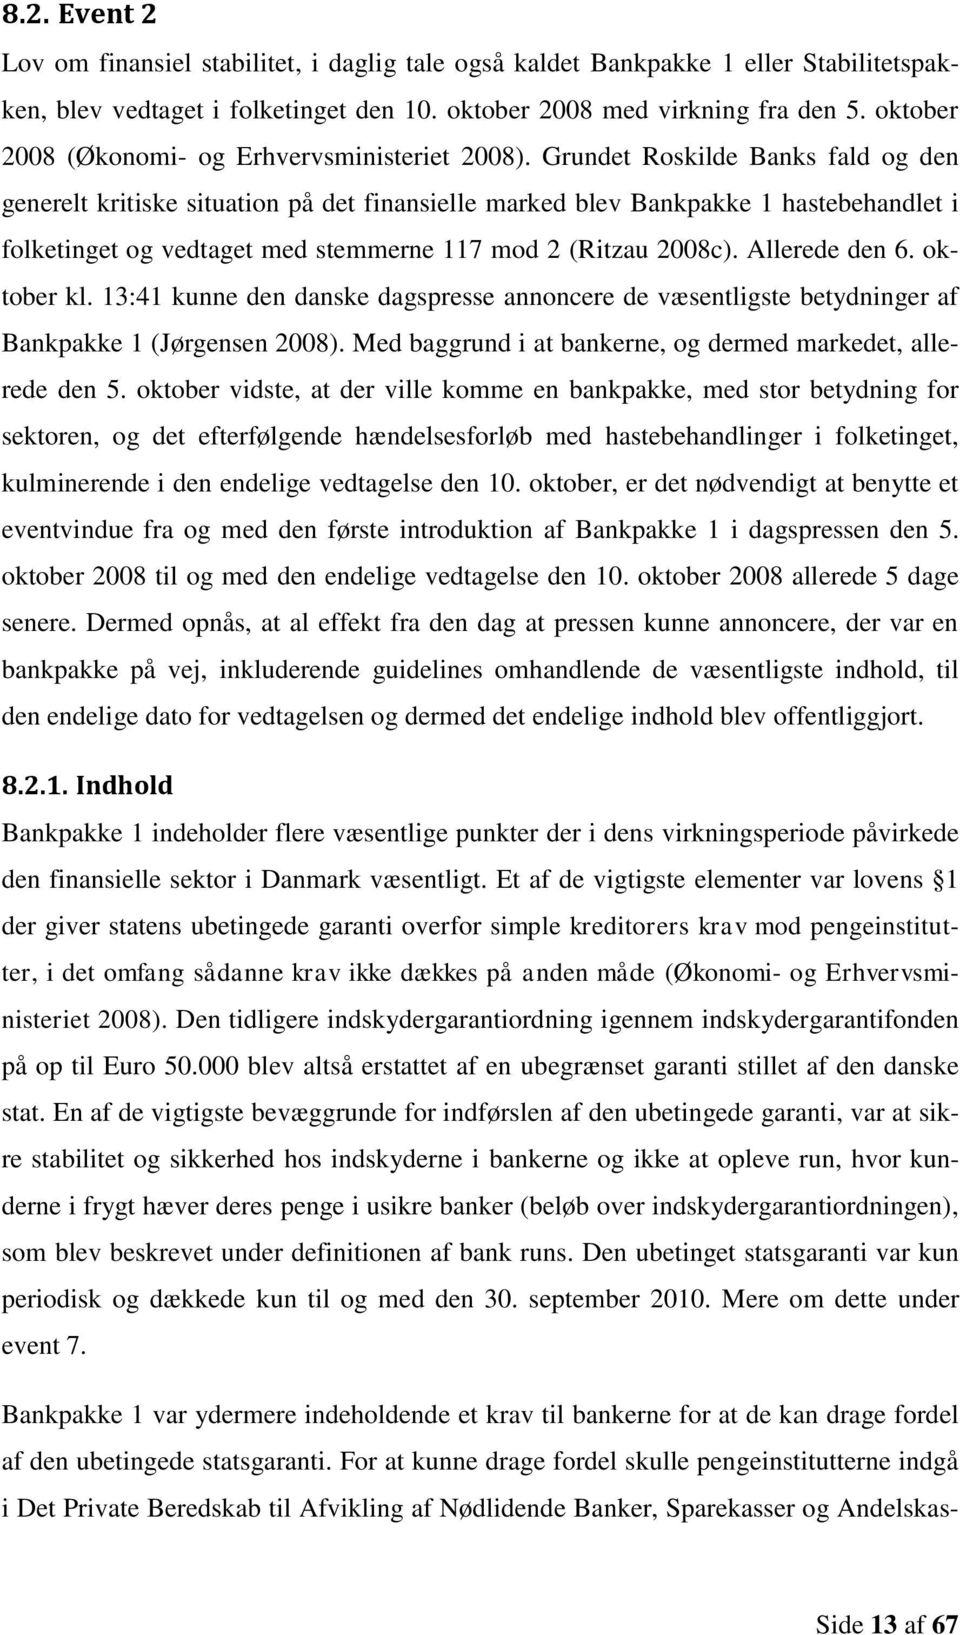 Grundet Roskilde Banks fald og den generelt kritiske situation på det finansielle marked blev Bankpakke 1 hastebehandlet i folketinget og vedtaget med stemmerne 117 mod 2 (Ritzau 2008c).